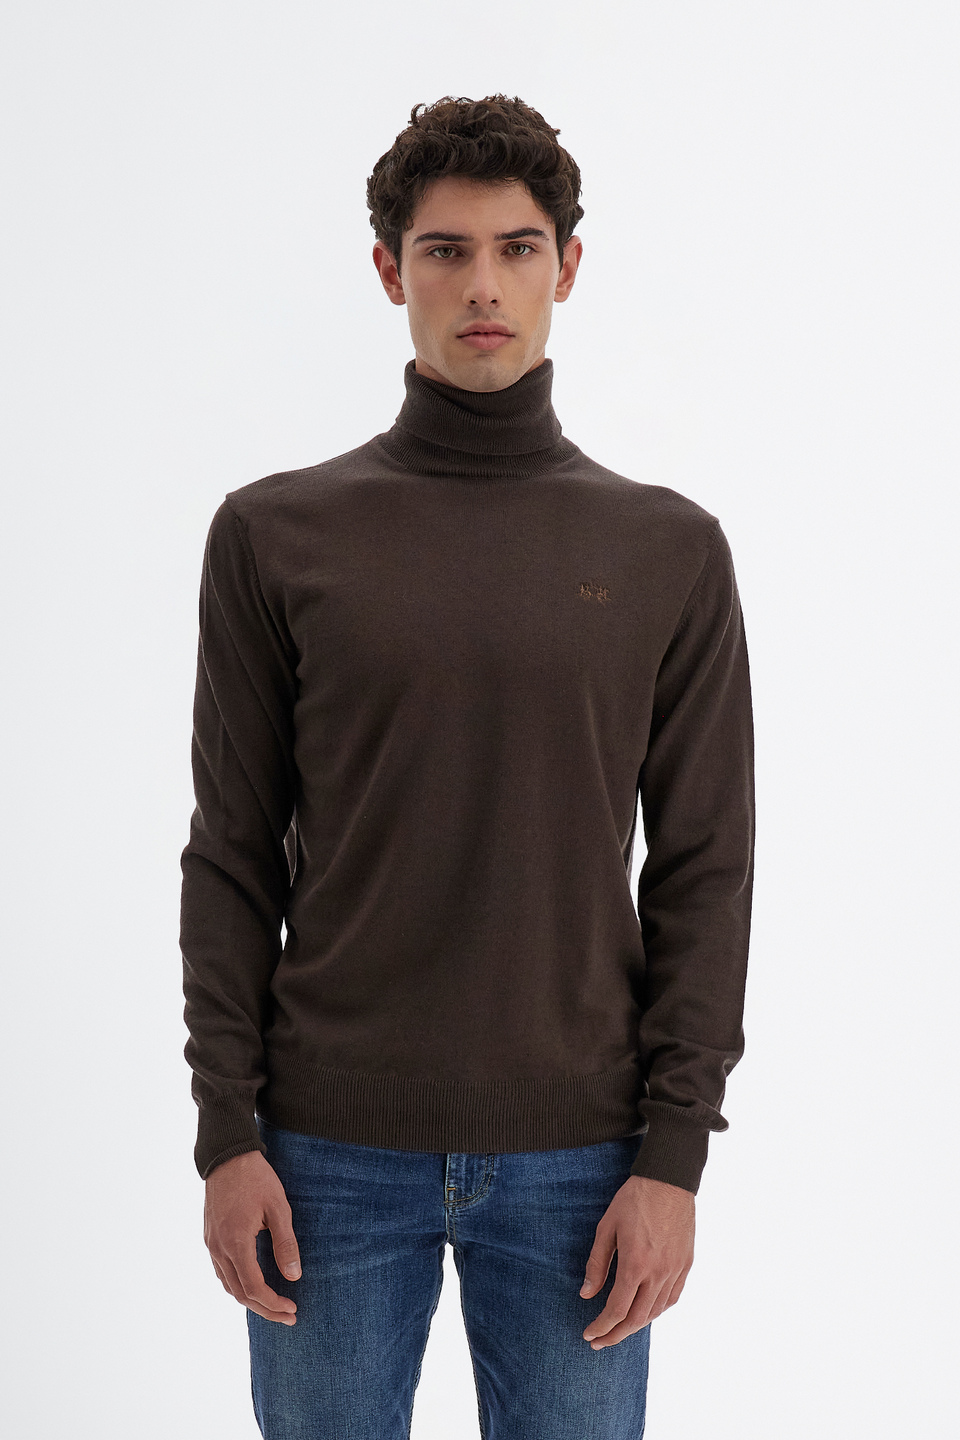 Camiseta de hombre de manga larga cuello alto en mezcla de algodón y lana regular fit | La Martina - Official Online Shop